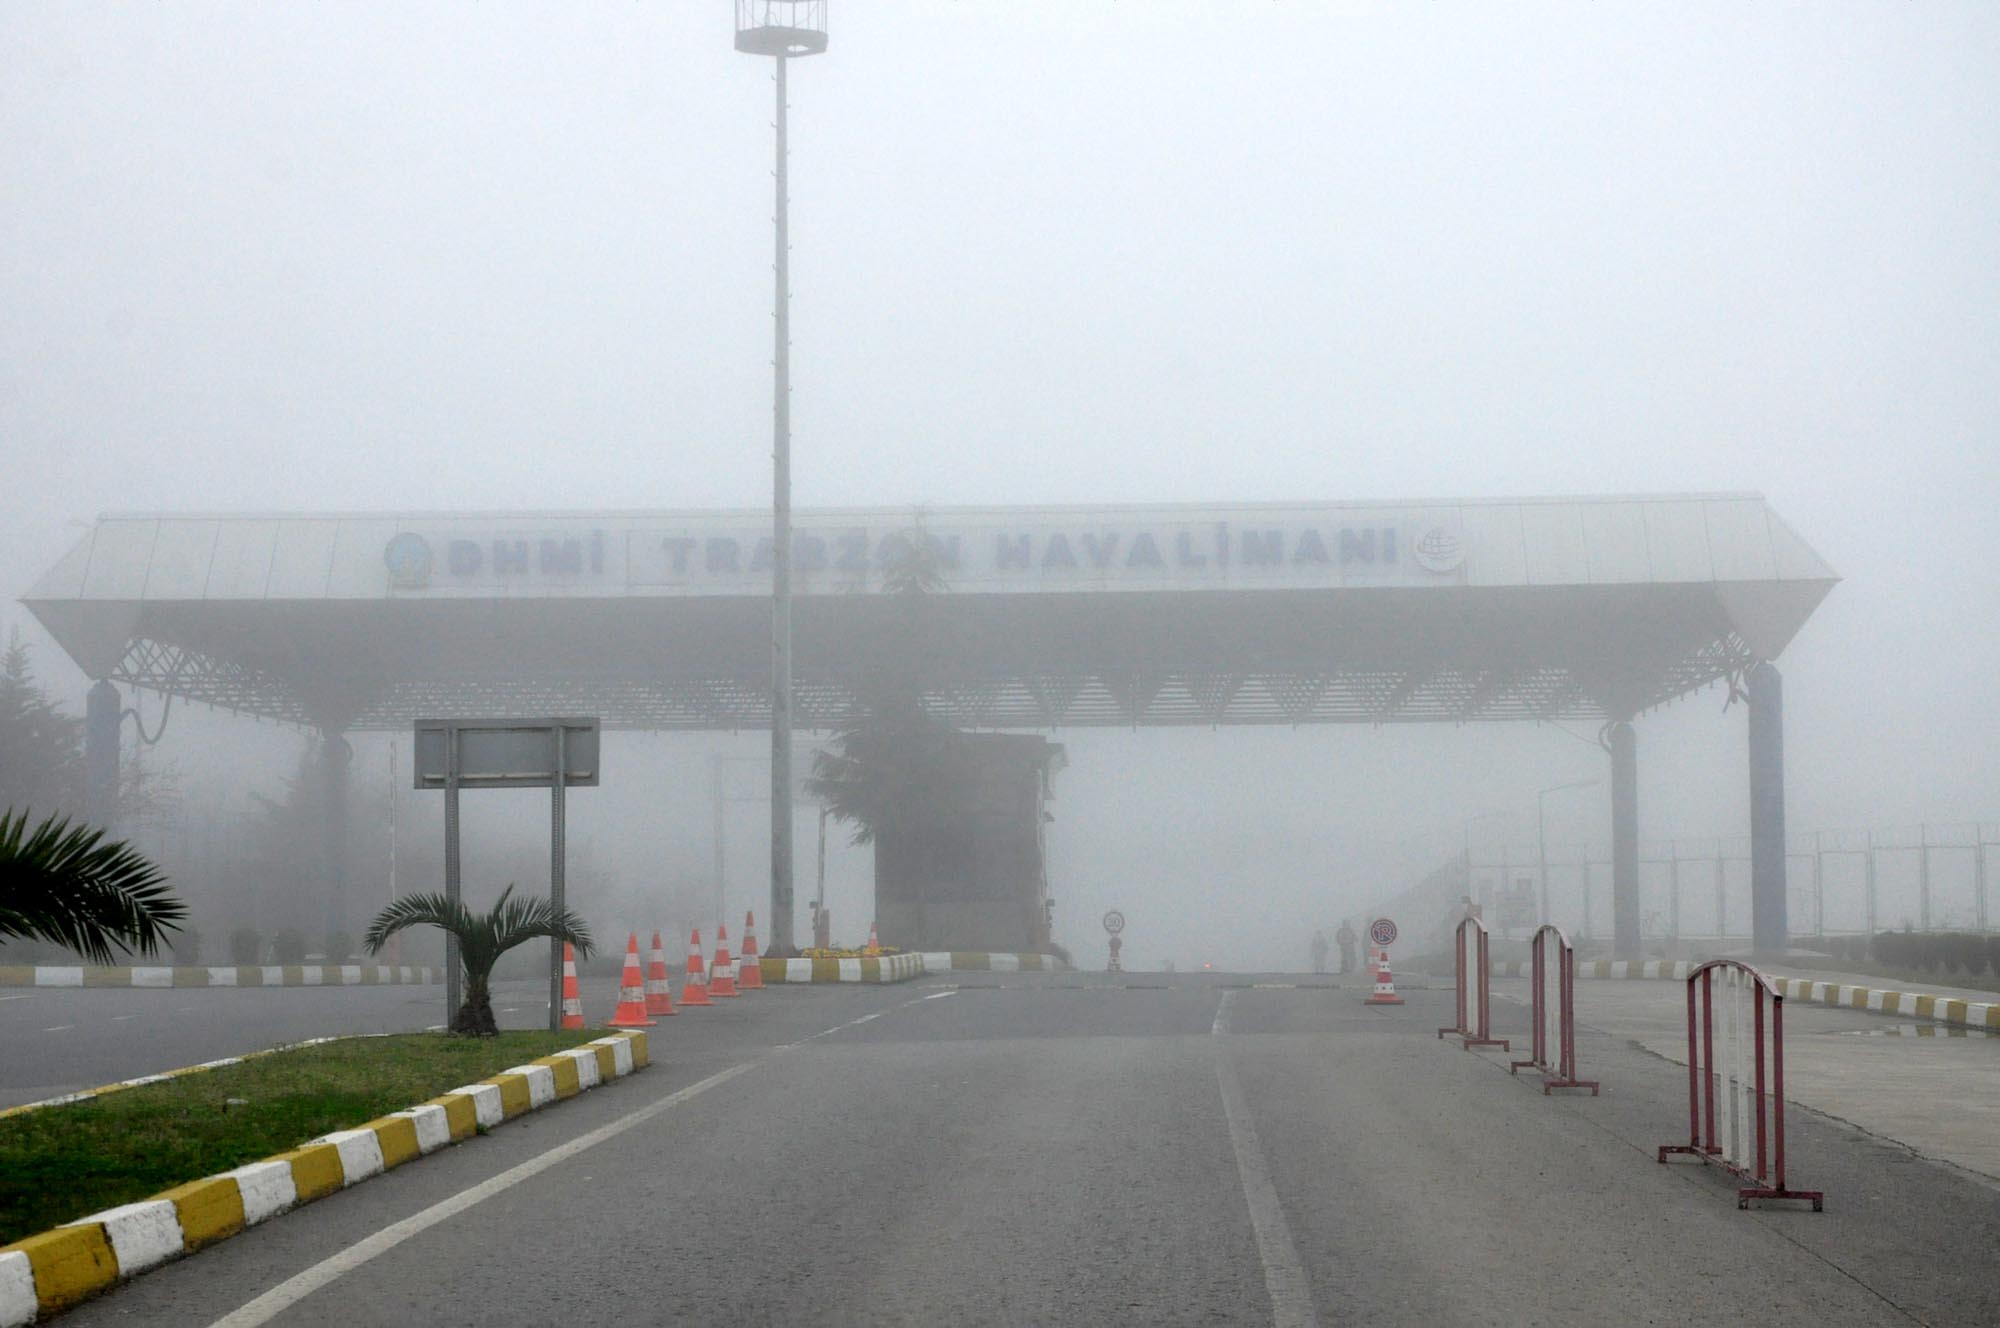 Trabzon'da etkili olan yoğun sis, hava ulaşımını etkiledi. Sis nedeniyle Trabzon Havalimanı çevresinde görüş uzaklığı düştü.